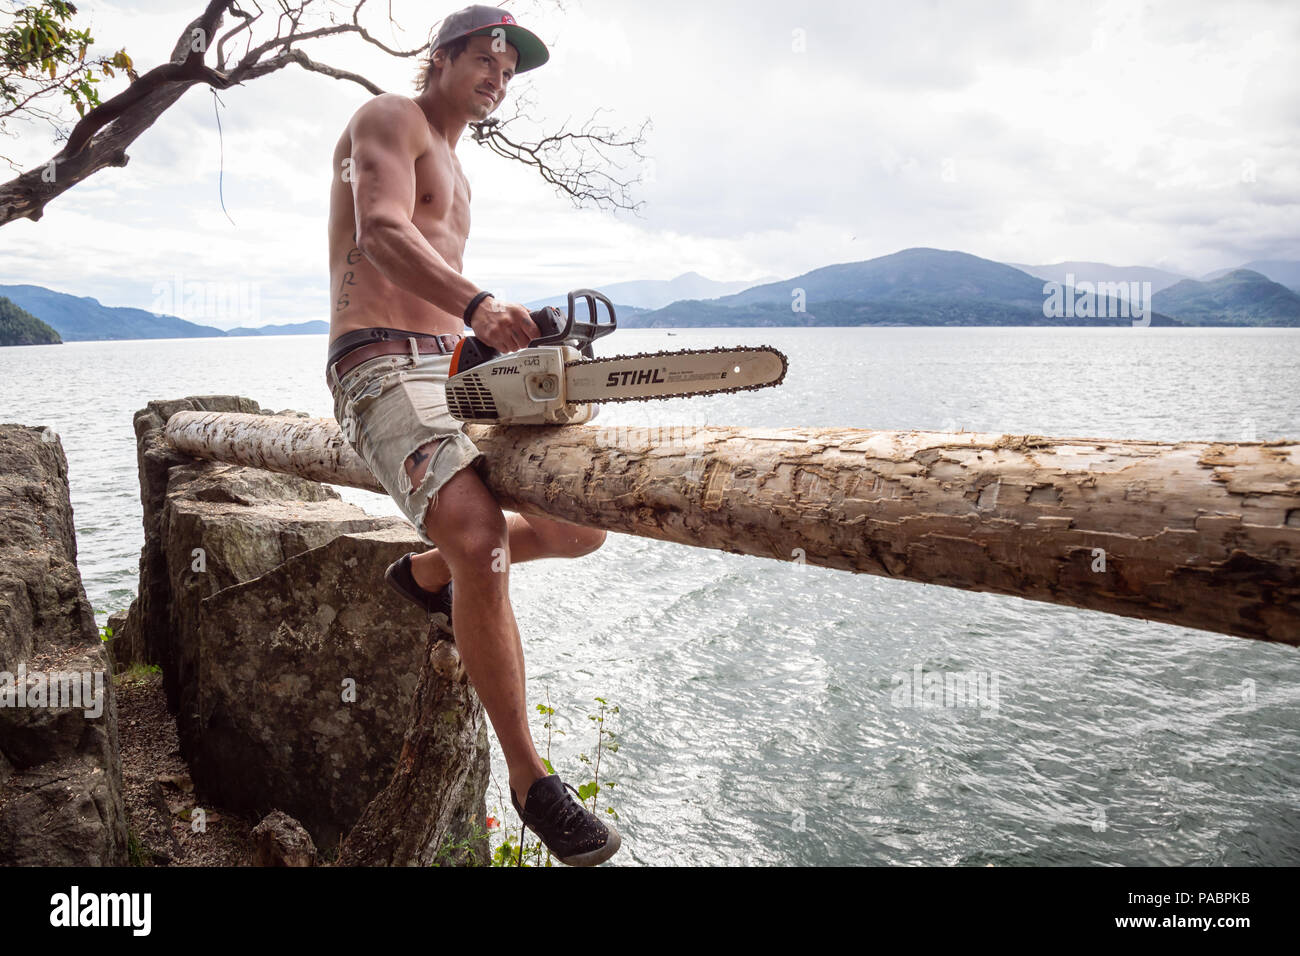 Lions Bay, Colombie-Britannique, Canada - 1 juillet 2018 : l'homme à la tronçonneuse est de couper un rondin de bois pour construire une plate-forme de saut de falaise. Banque D'Images